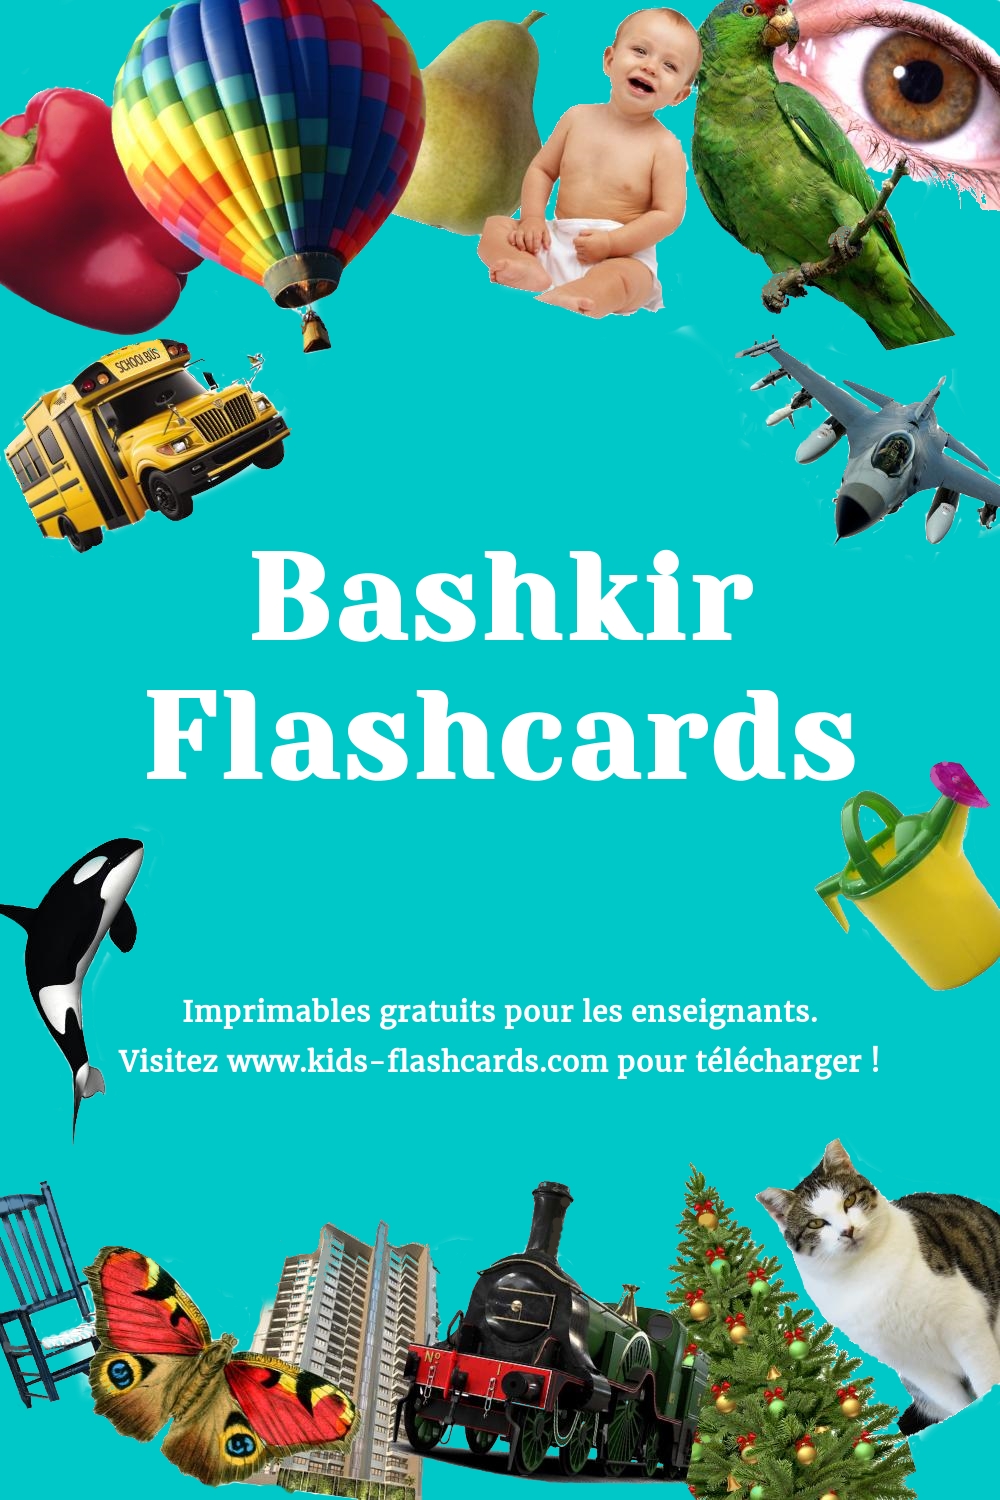 Imprimables gratuits en Bashkir